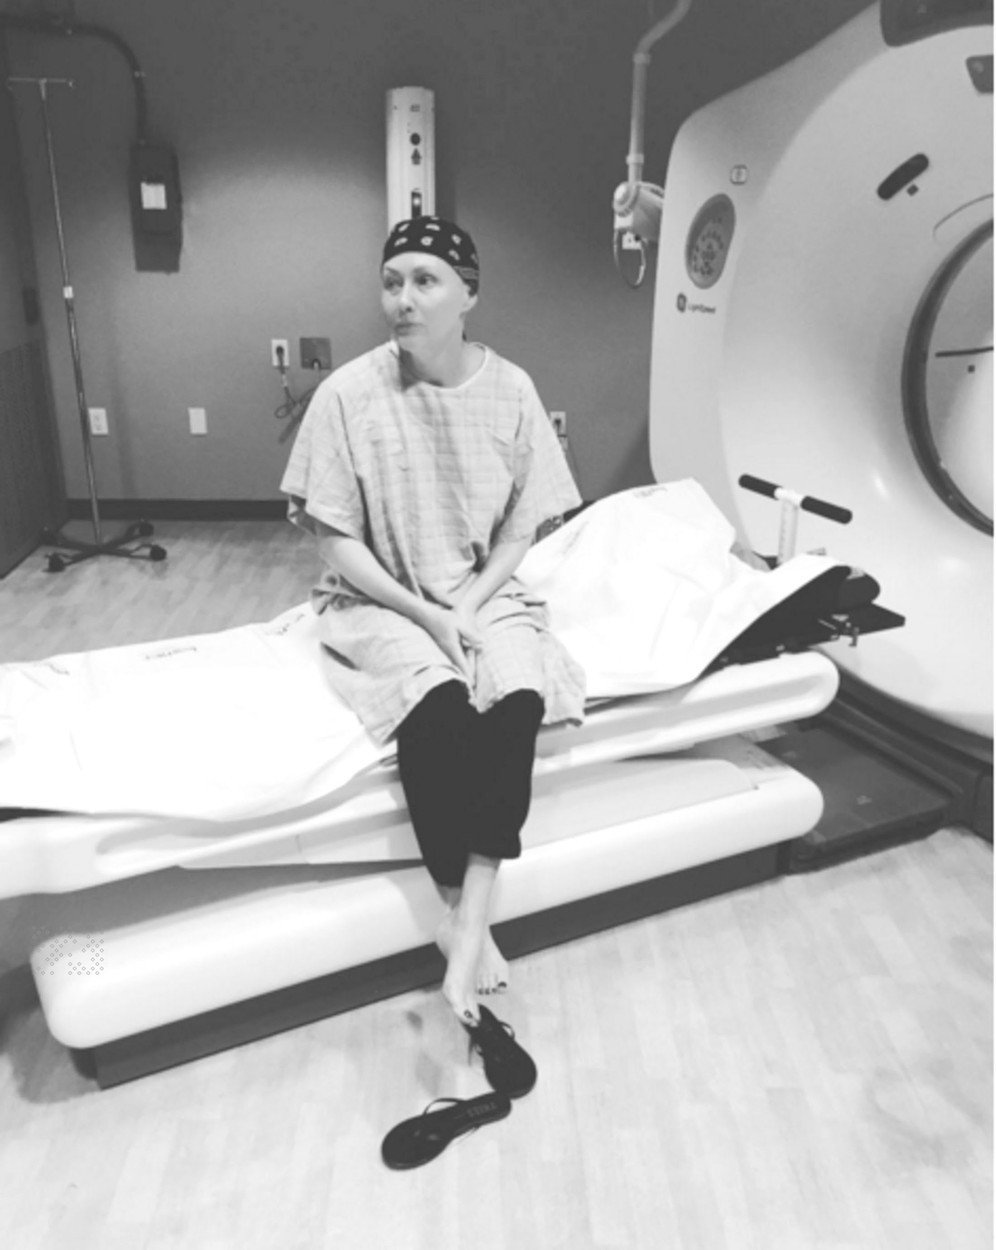 Doherty objevili lékaři rakovinu v roce 2015. Tehdy ještě měla velkou naději na vyléčení